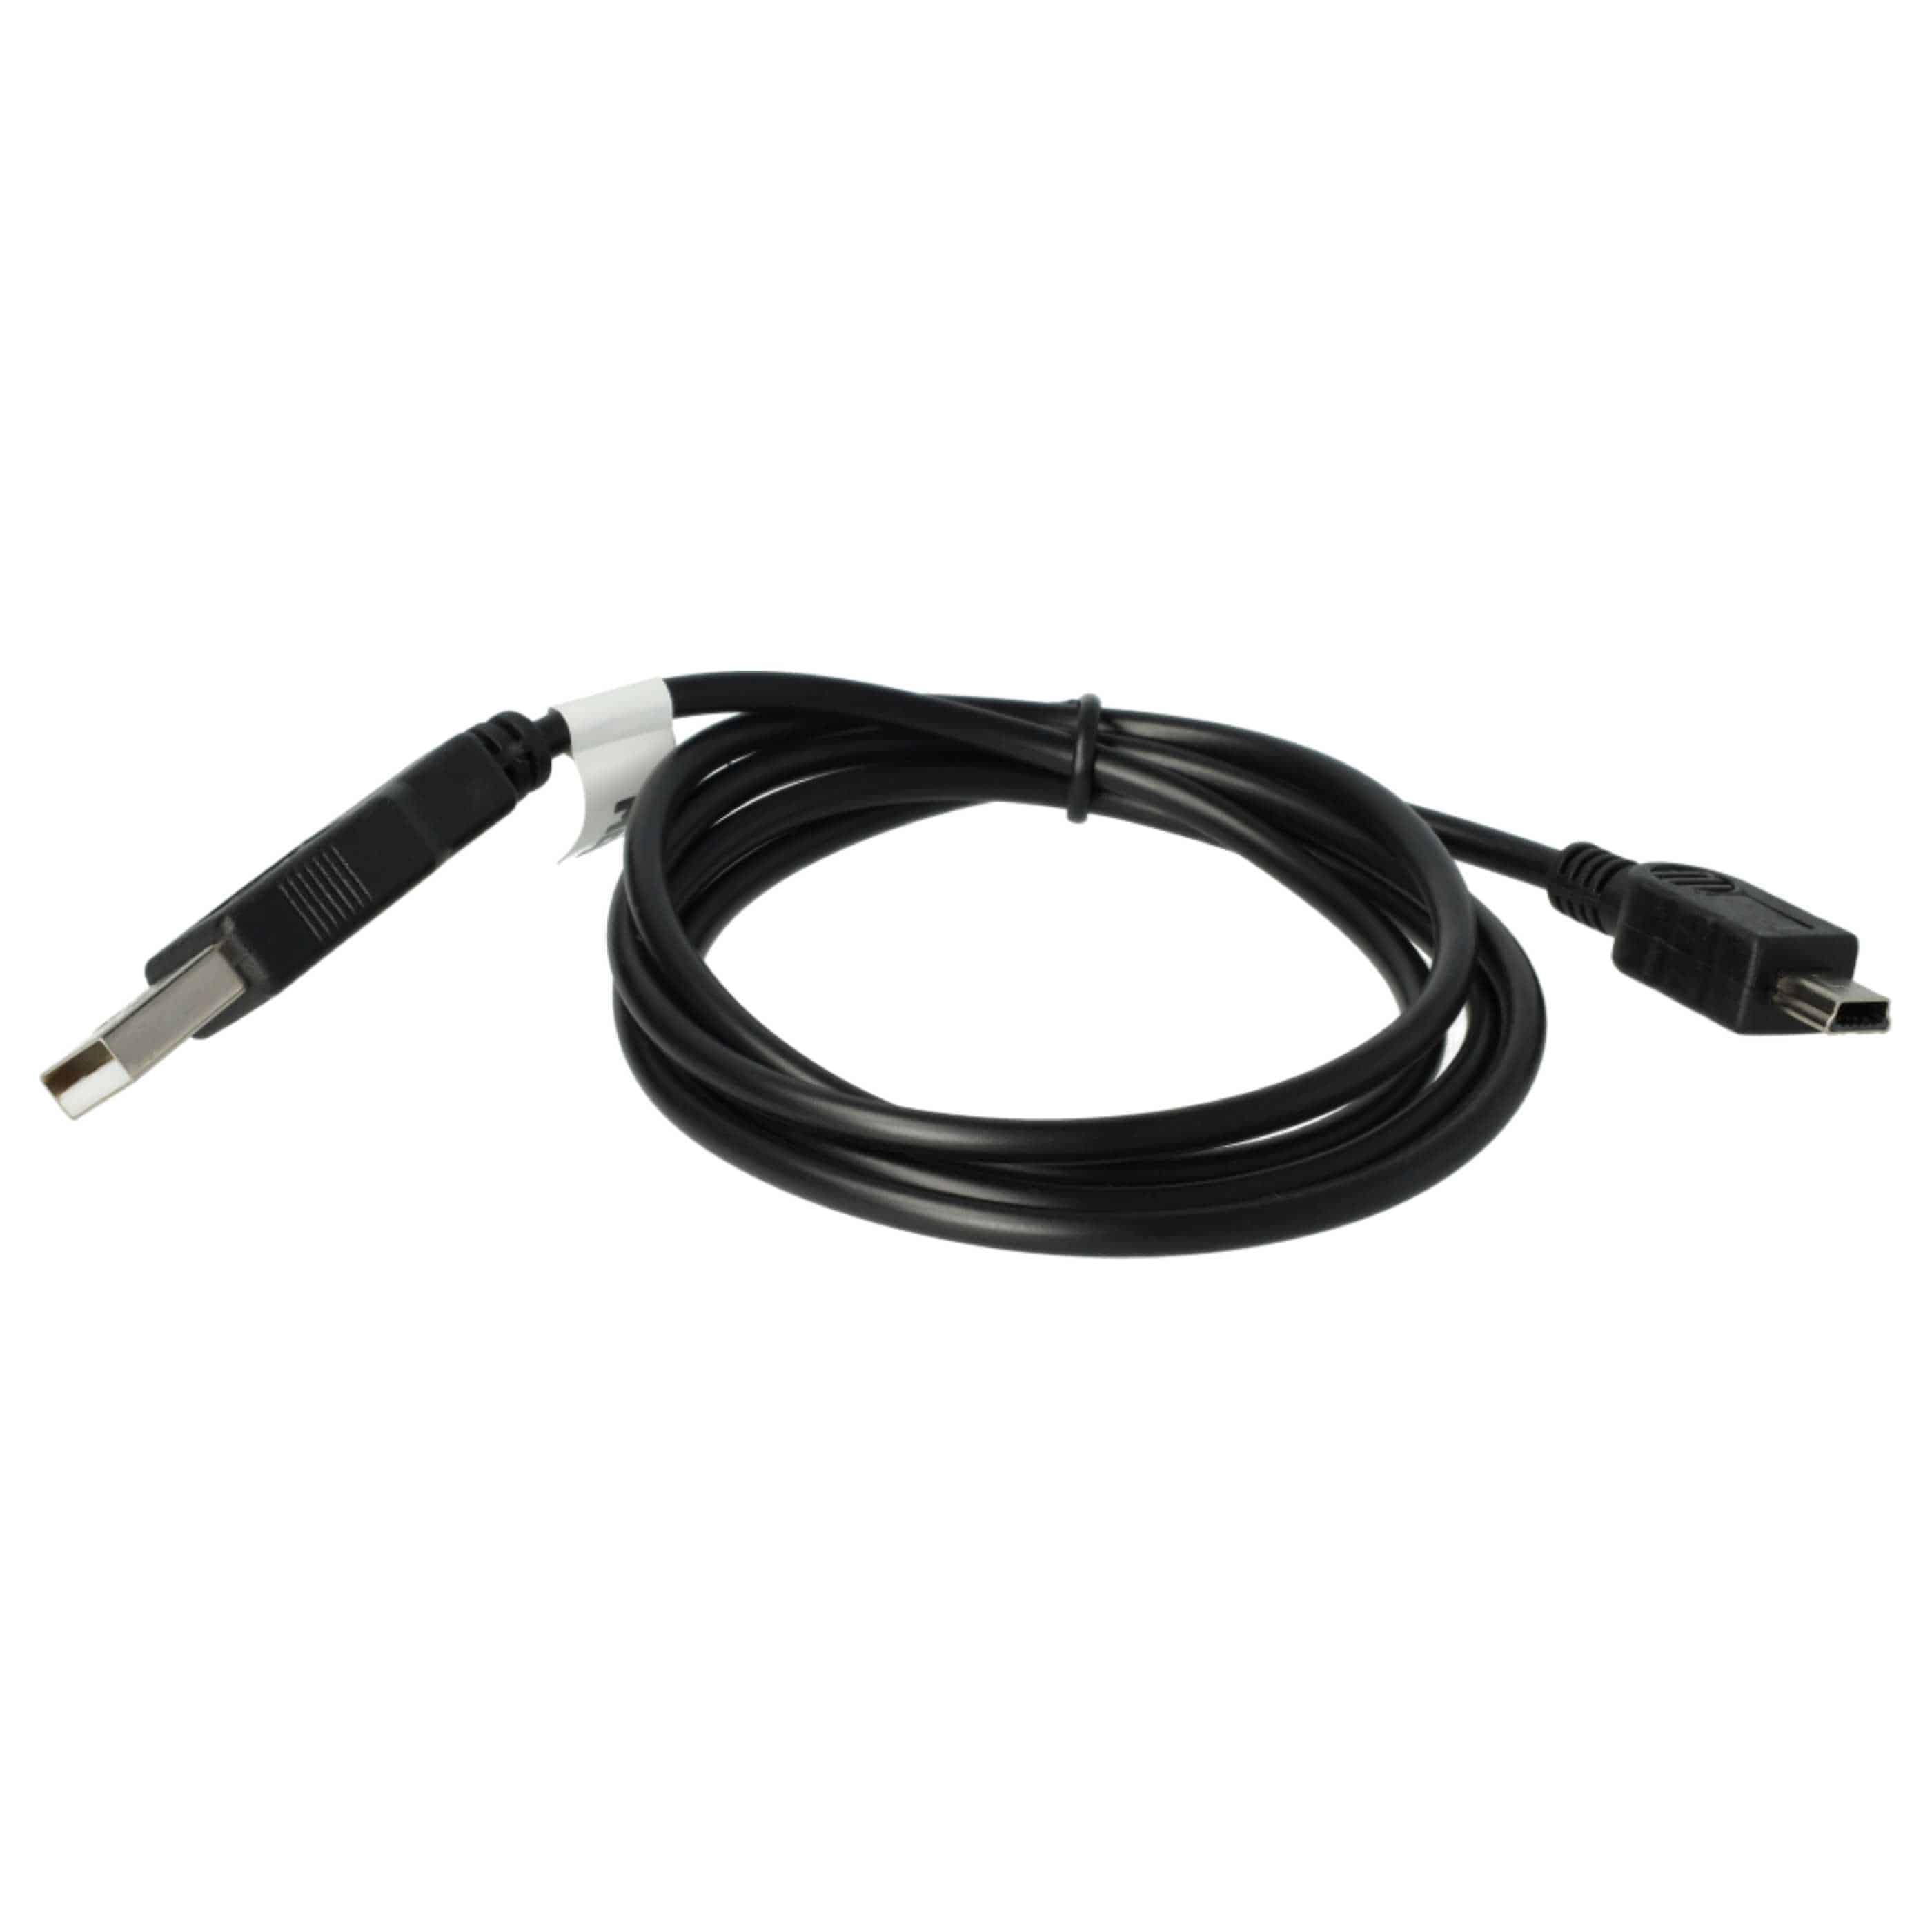 Uniwersalny Kabel USB kabel ładujący 2w1 do powszechnych nawigacji GPS - 100 cm